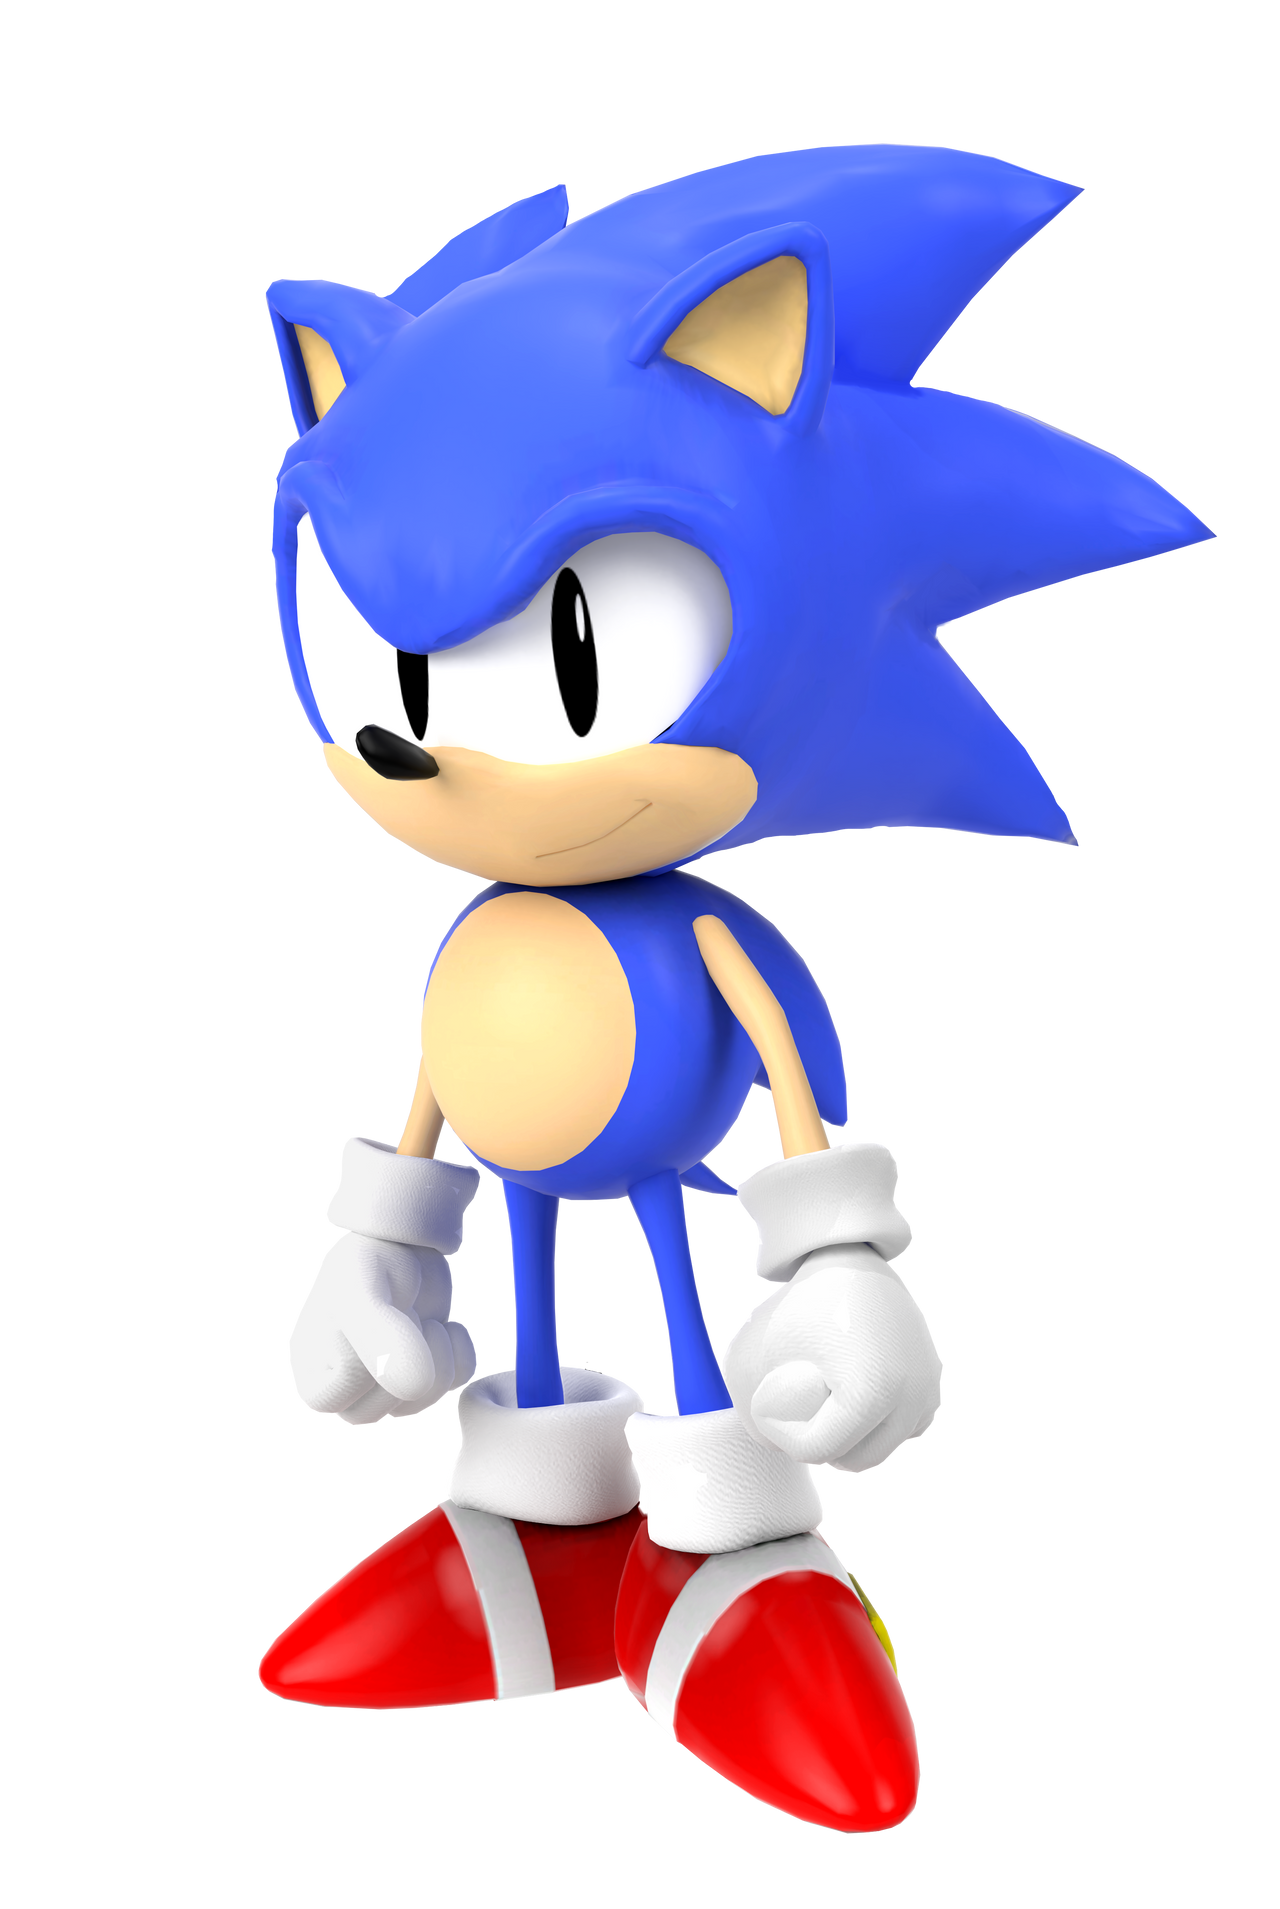 Классик Соник 3. Соник 3 СД. Sonic CD Classic. Классик Соник Sonic CD. Sonic classic 3